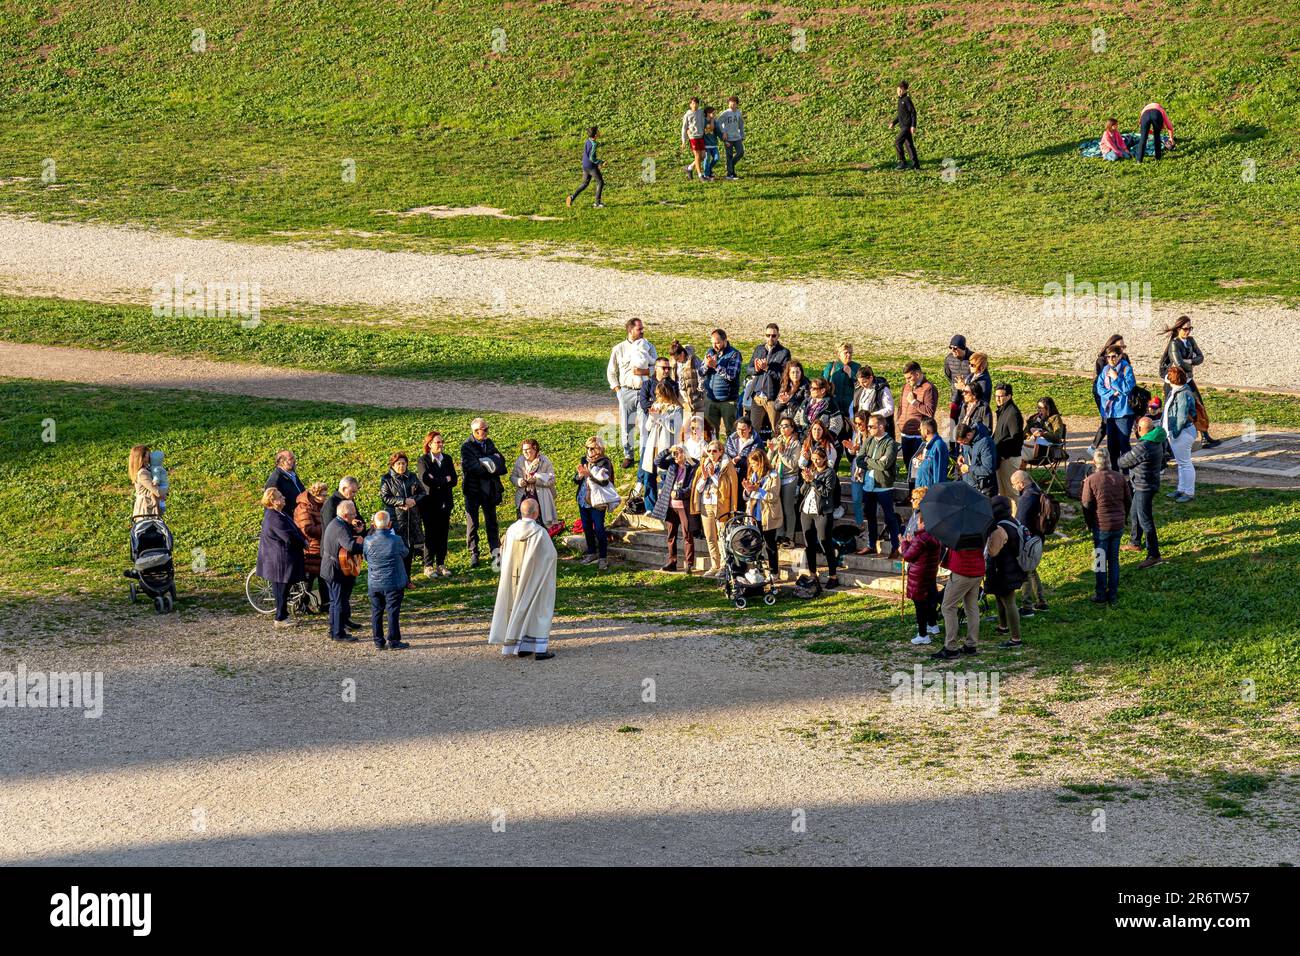 Une petite foule de gens assistent à un rassemblement religieux au Cirque Maximus, un ancien circuit de chars romains, Rome Italie Banque D'Images